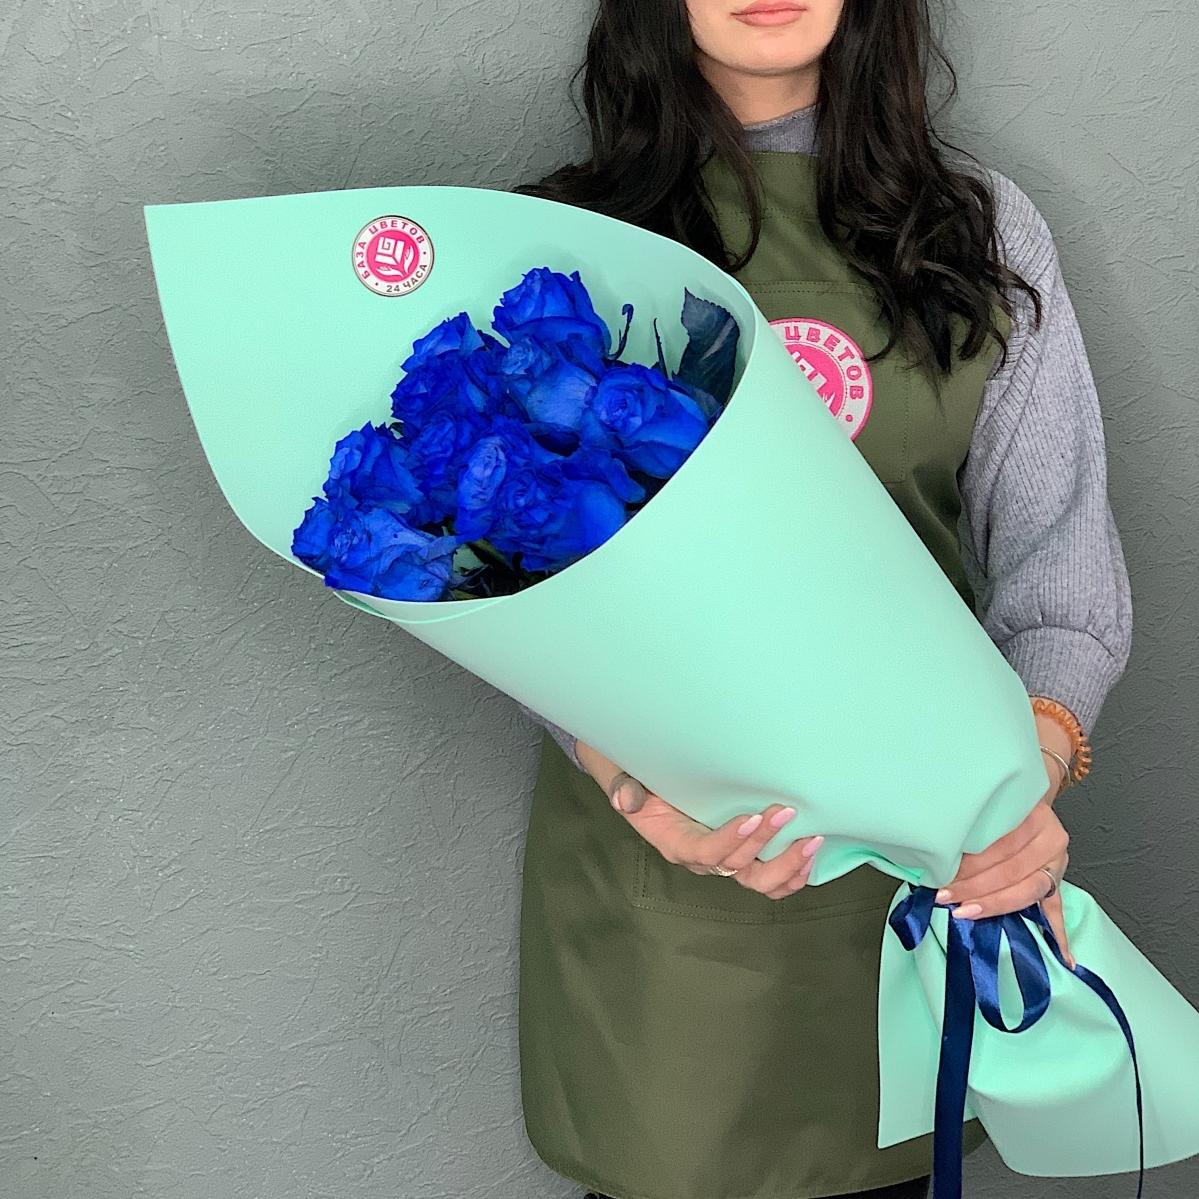 Синие розы (Эквадор) 70 см